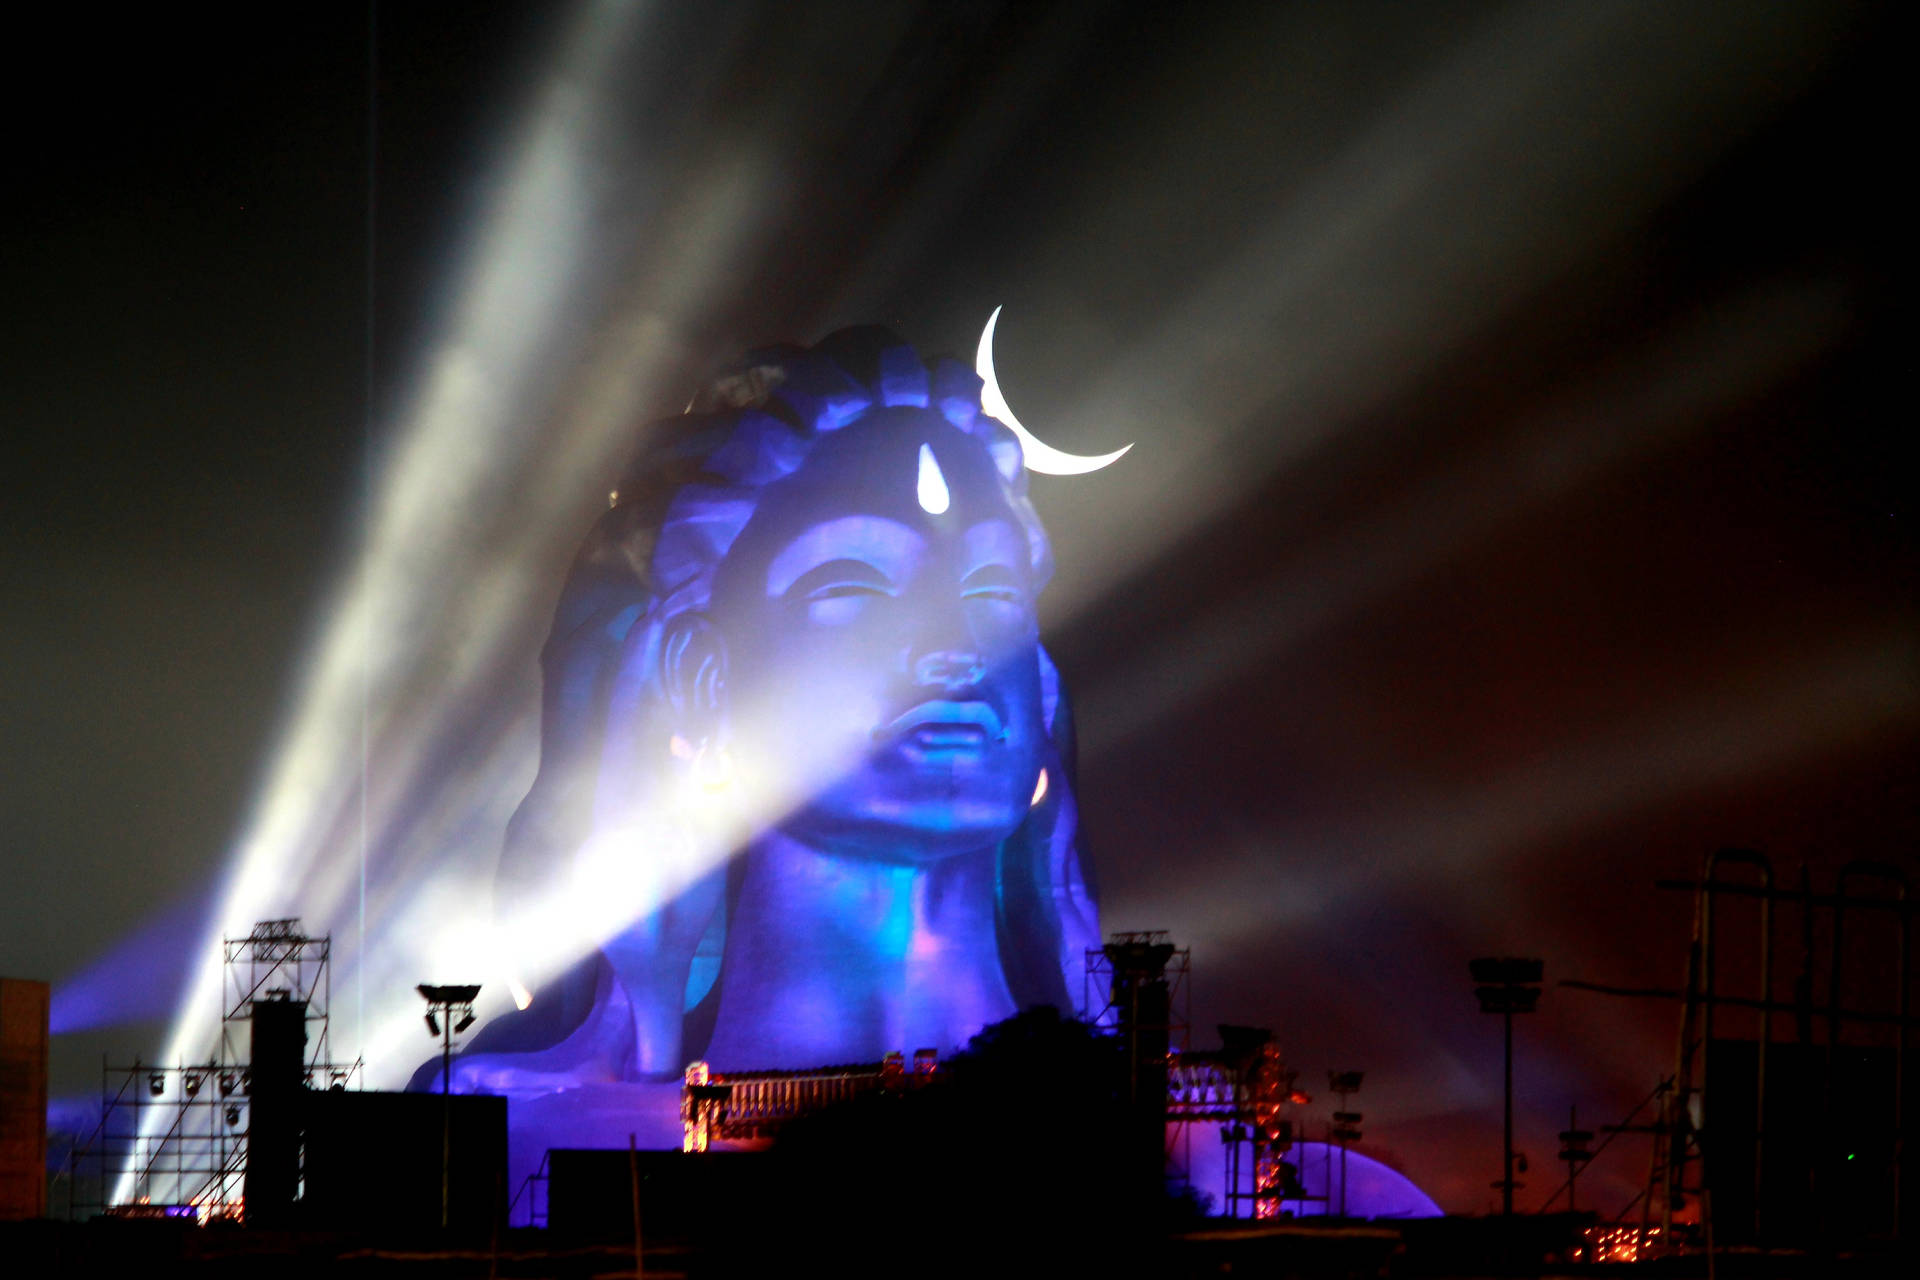 Irampljuset: Adiyogi Shiva-statyn Wallpaper